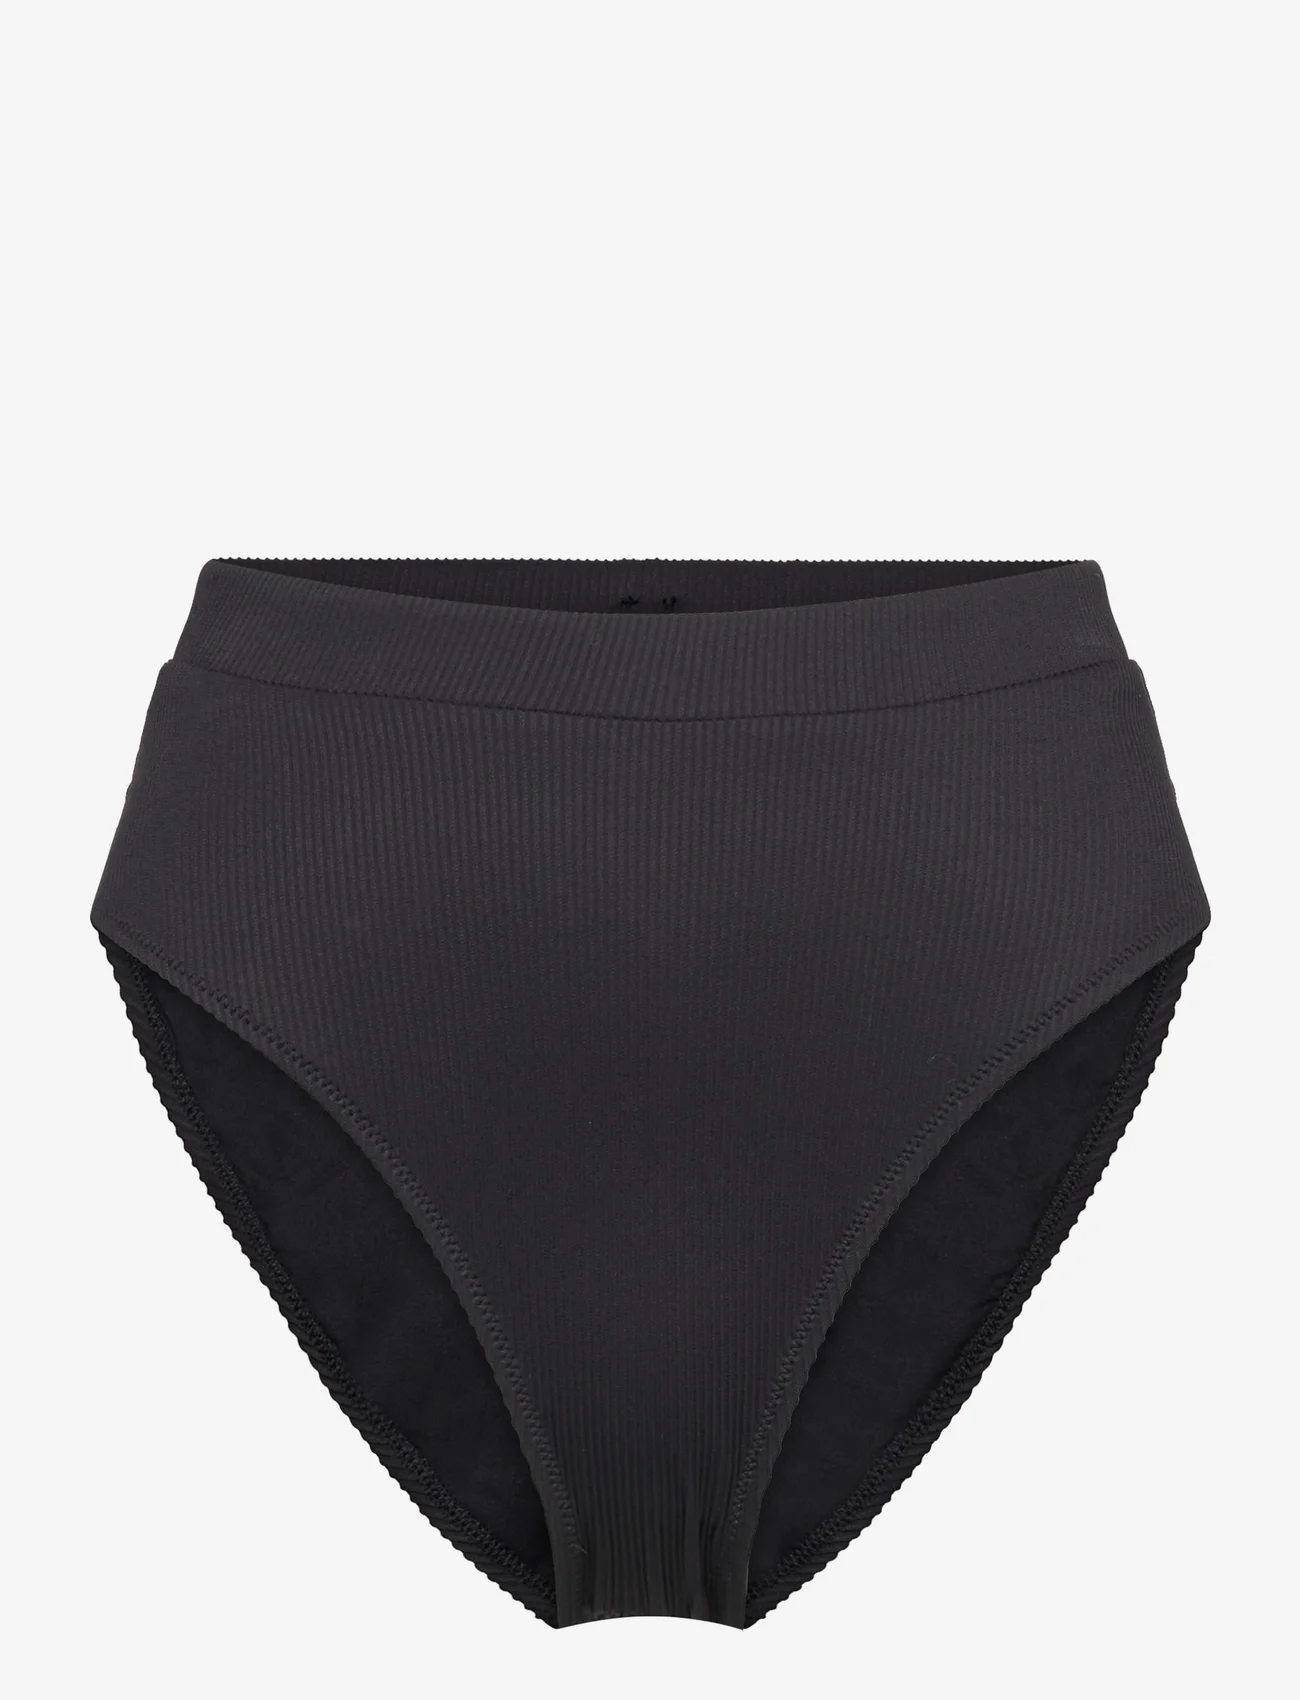 Understatement Underwear - High Cut Bikini Briefs - bikinihosen mit hoher taille - black - 0